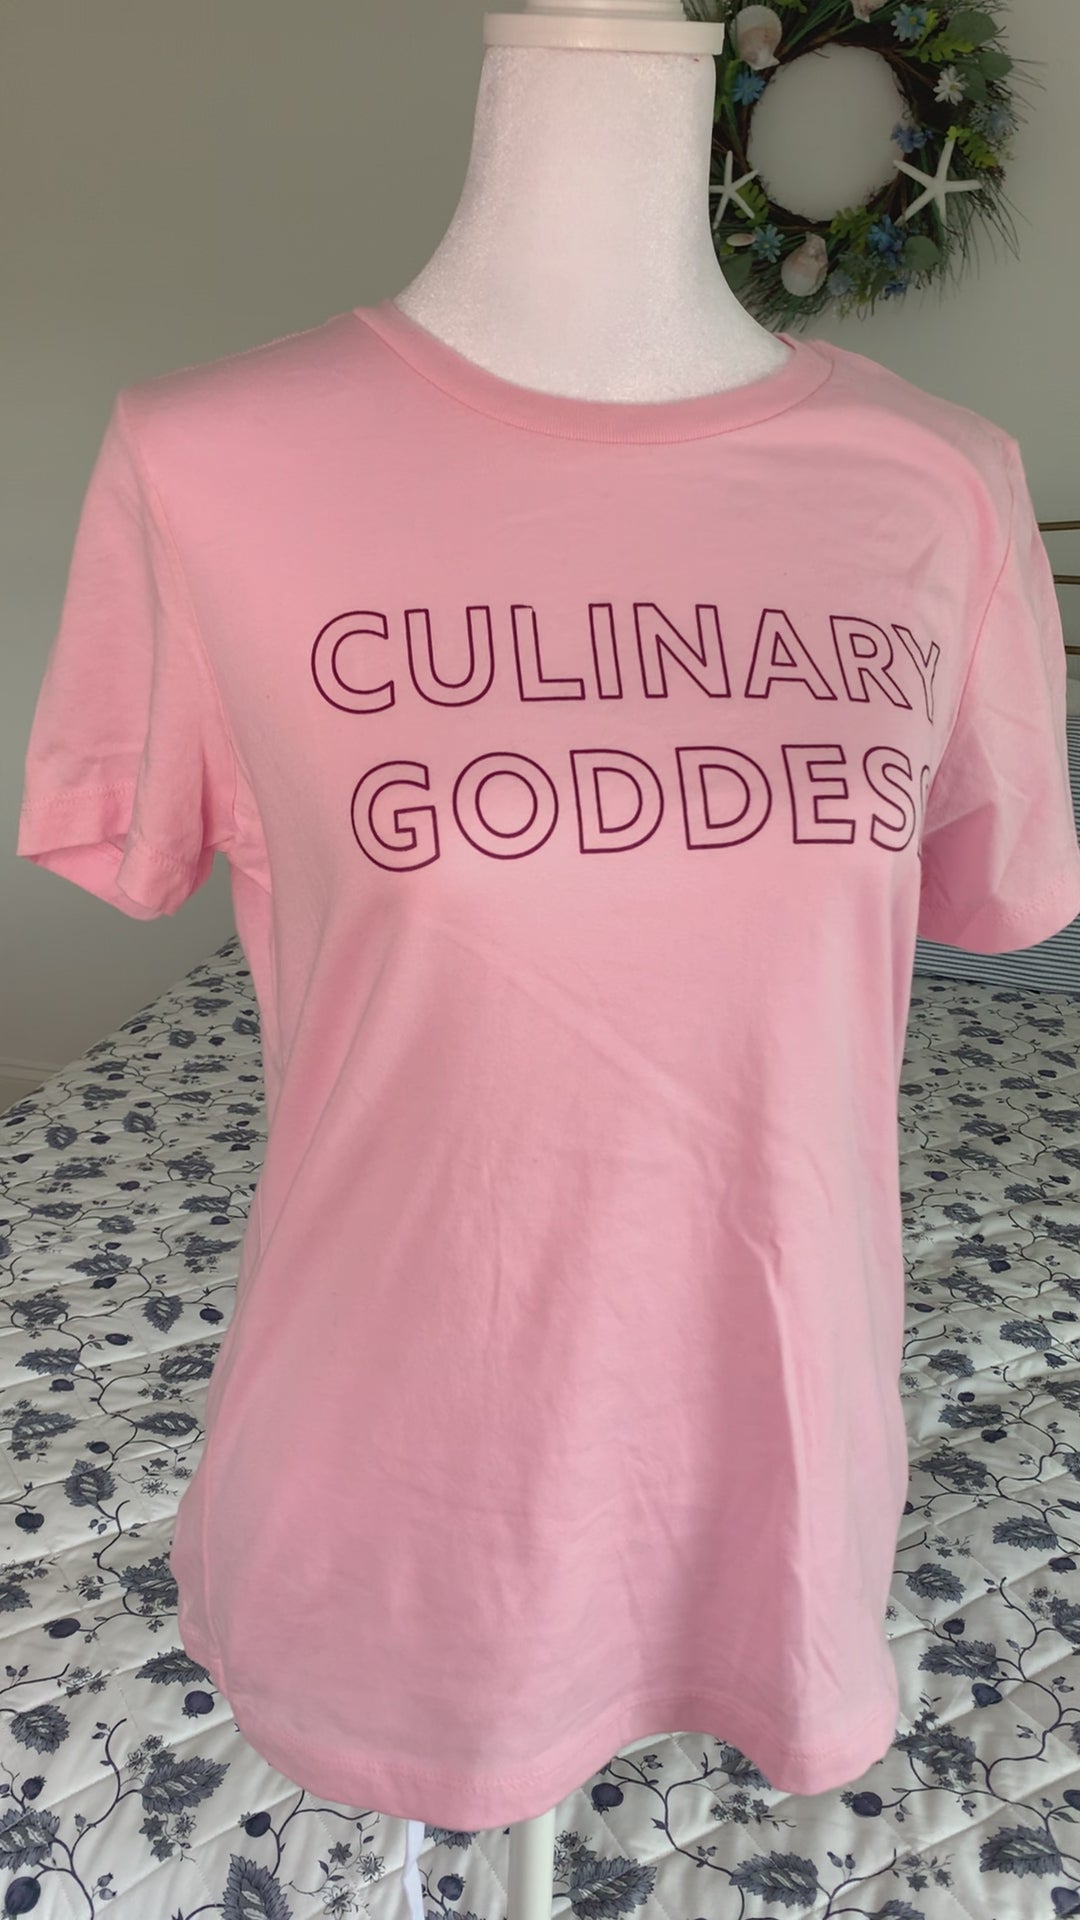 A light pink women's t-shirt that reads "Culinary Goddess" hangs on a manikin